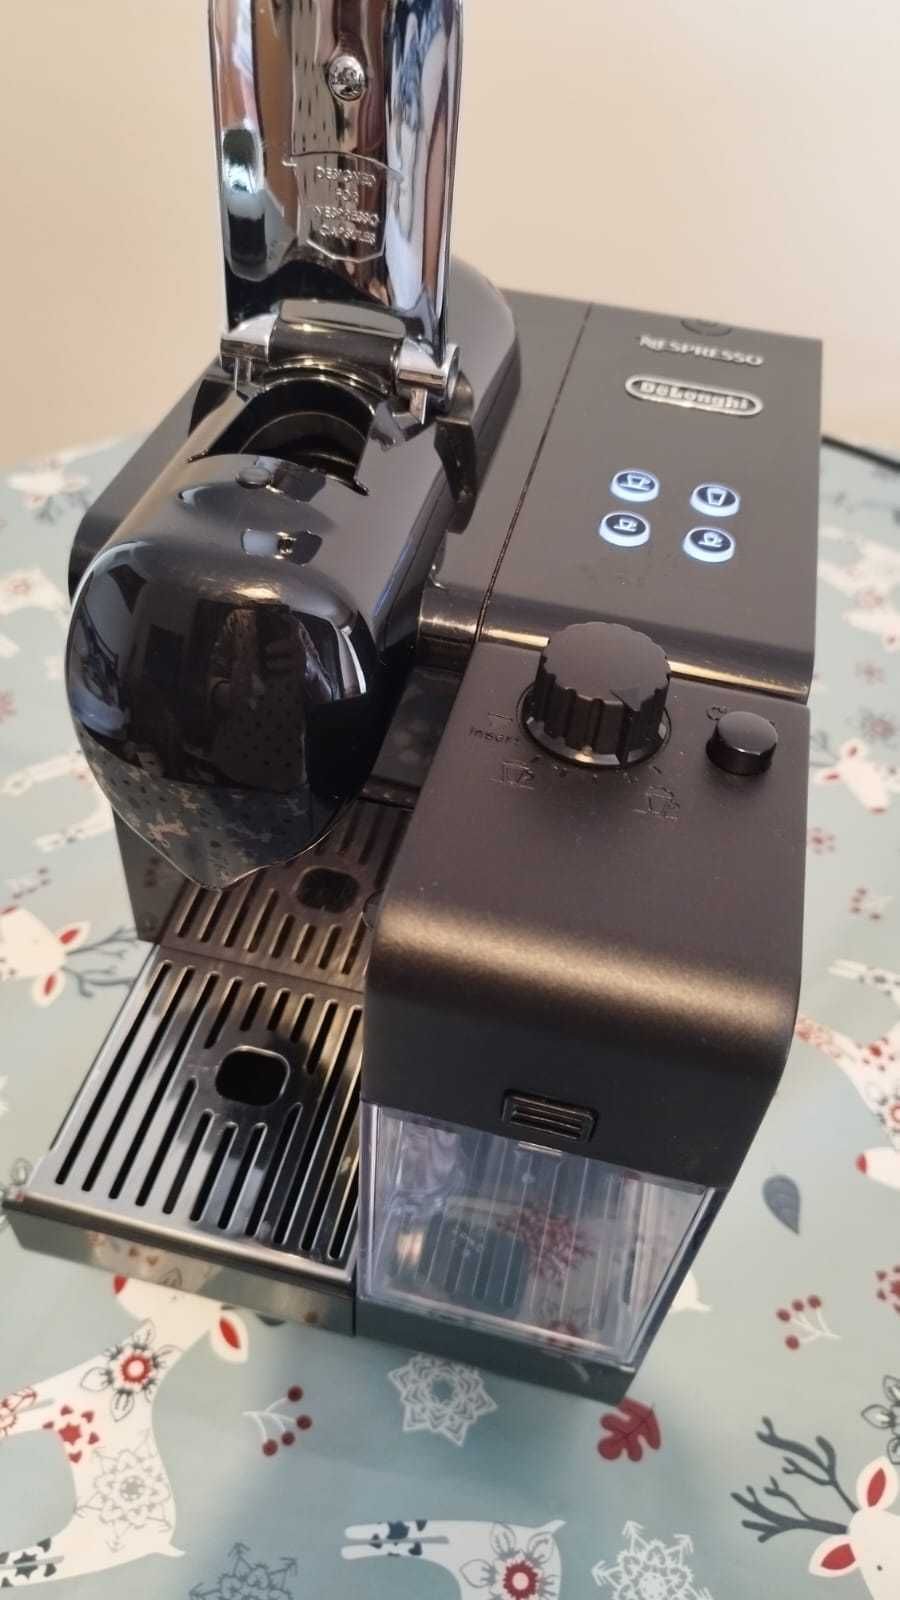 Máquina de café Nespresso Lattissima EN520.b black como nova